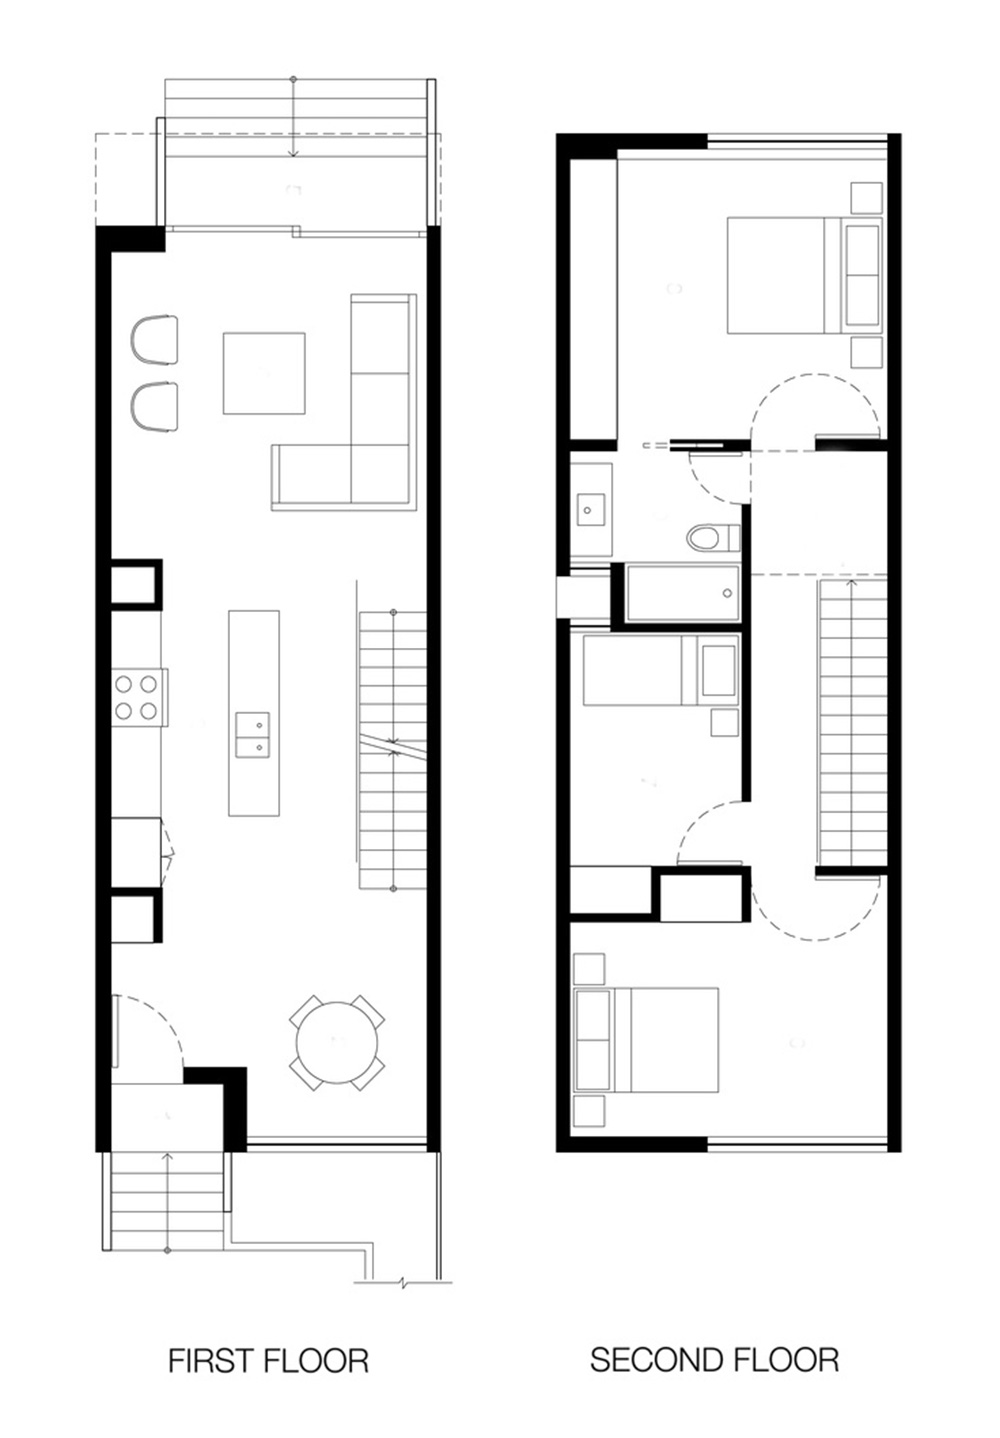 Desain Rumah Type 45 dengan 2 Lantai